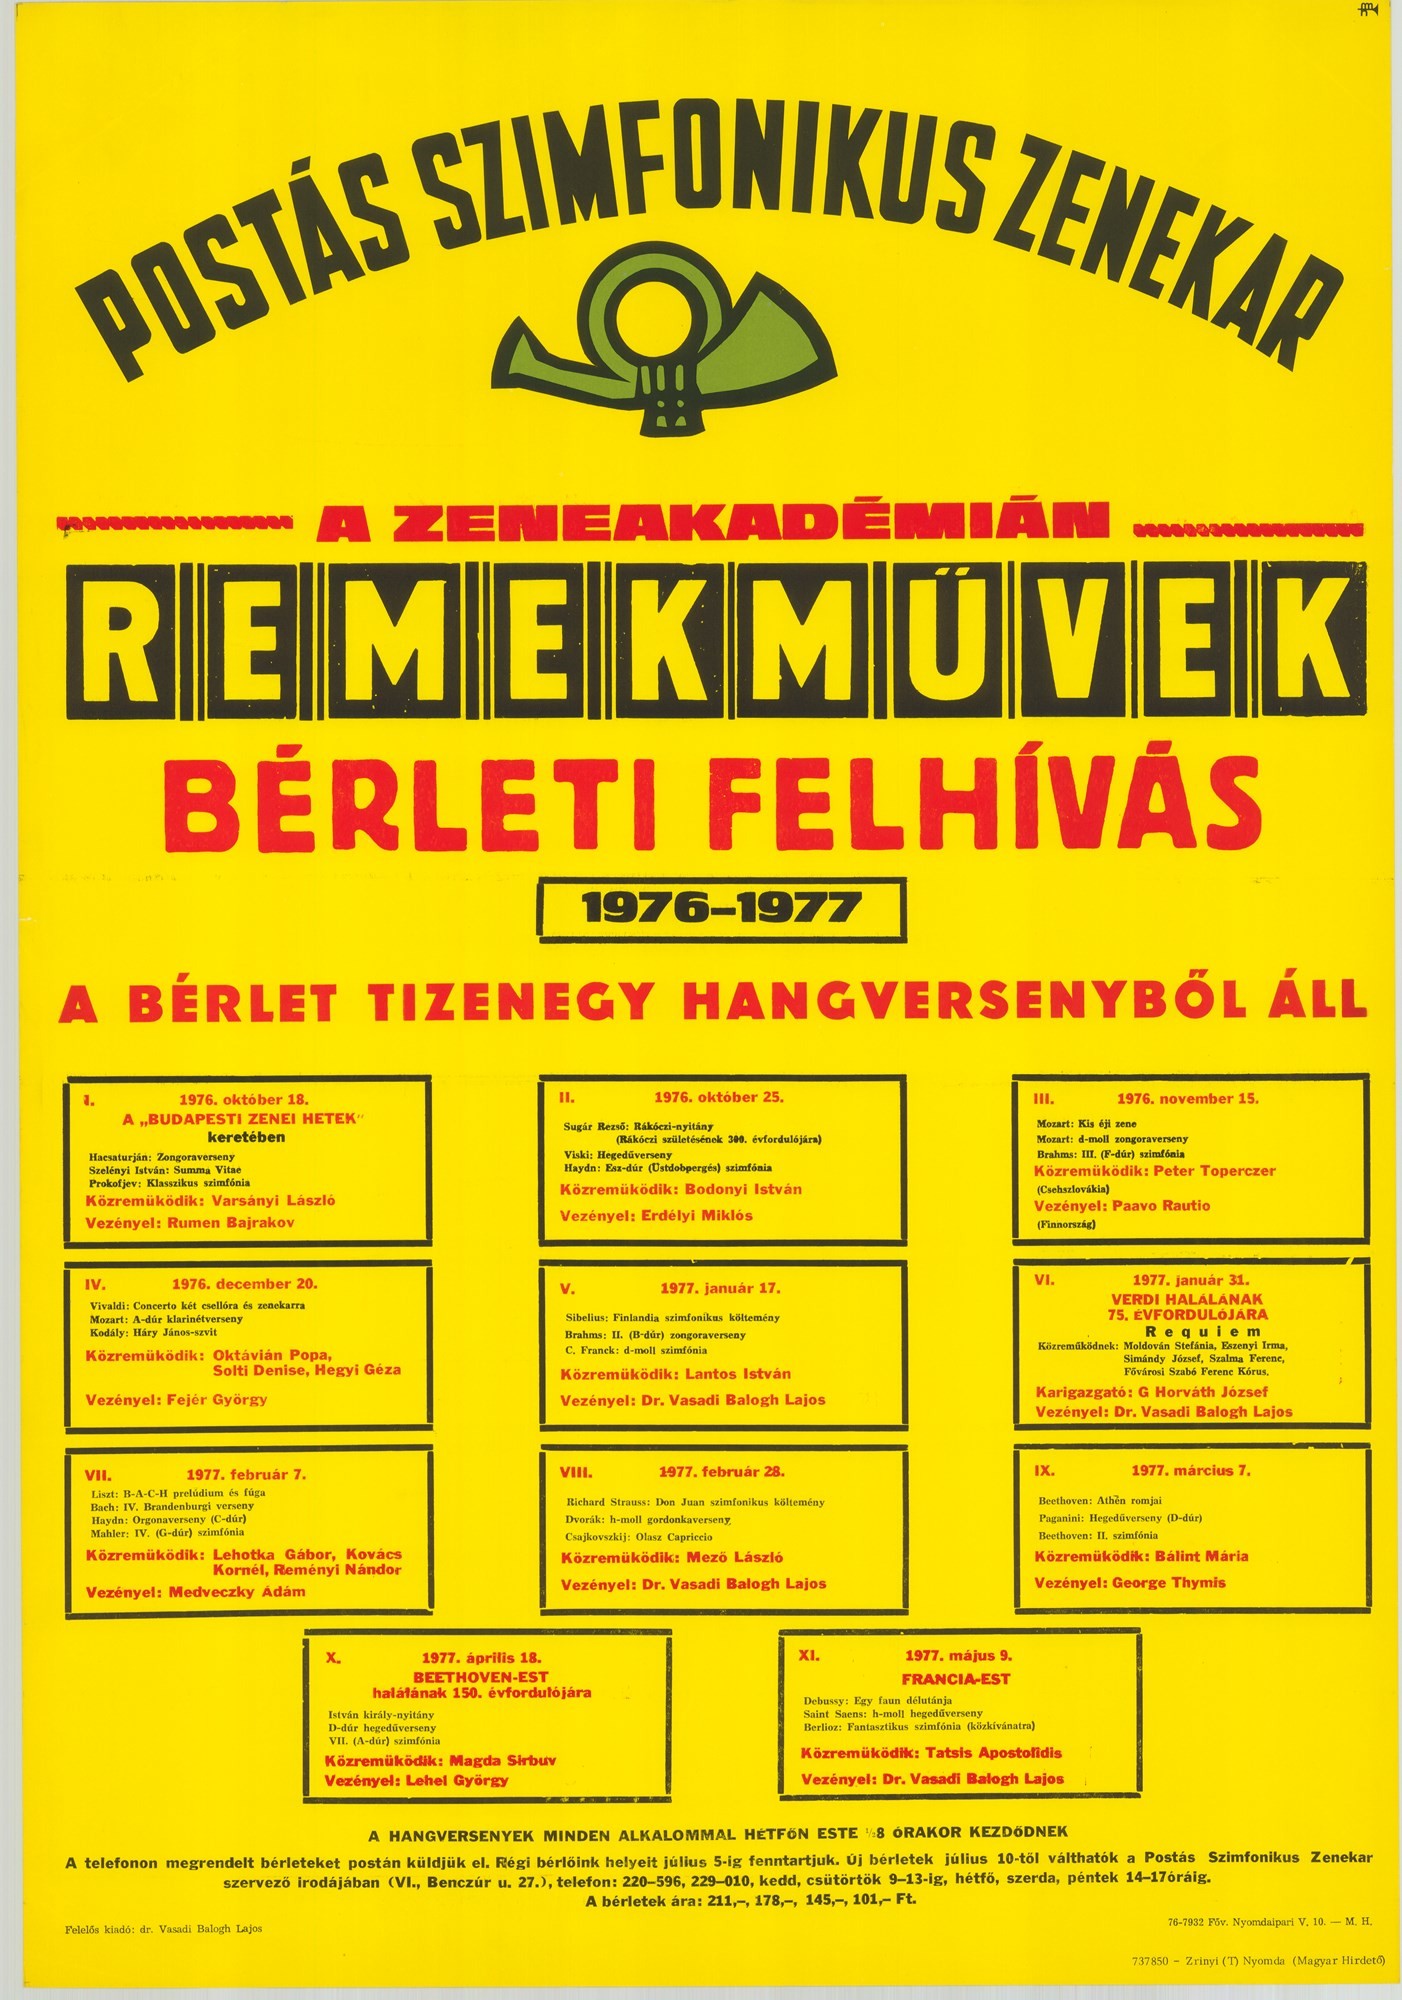 Plakát - Postás Szimfonikus Zenekar a Zeneakadémián, 1976-1977 (Postamúzeum CC BY-NC-SA)